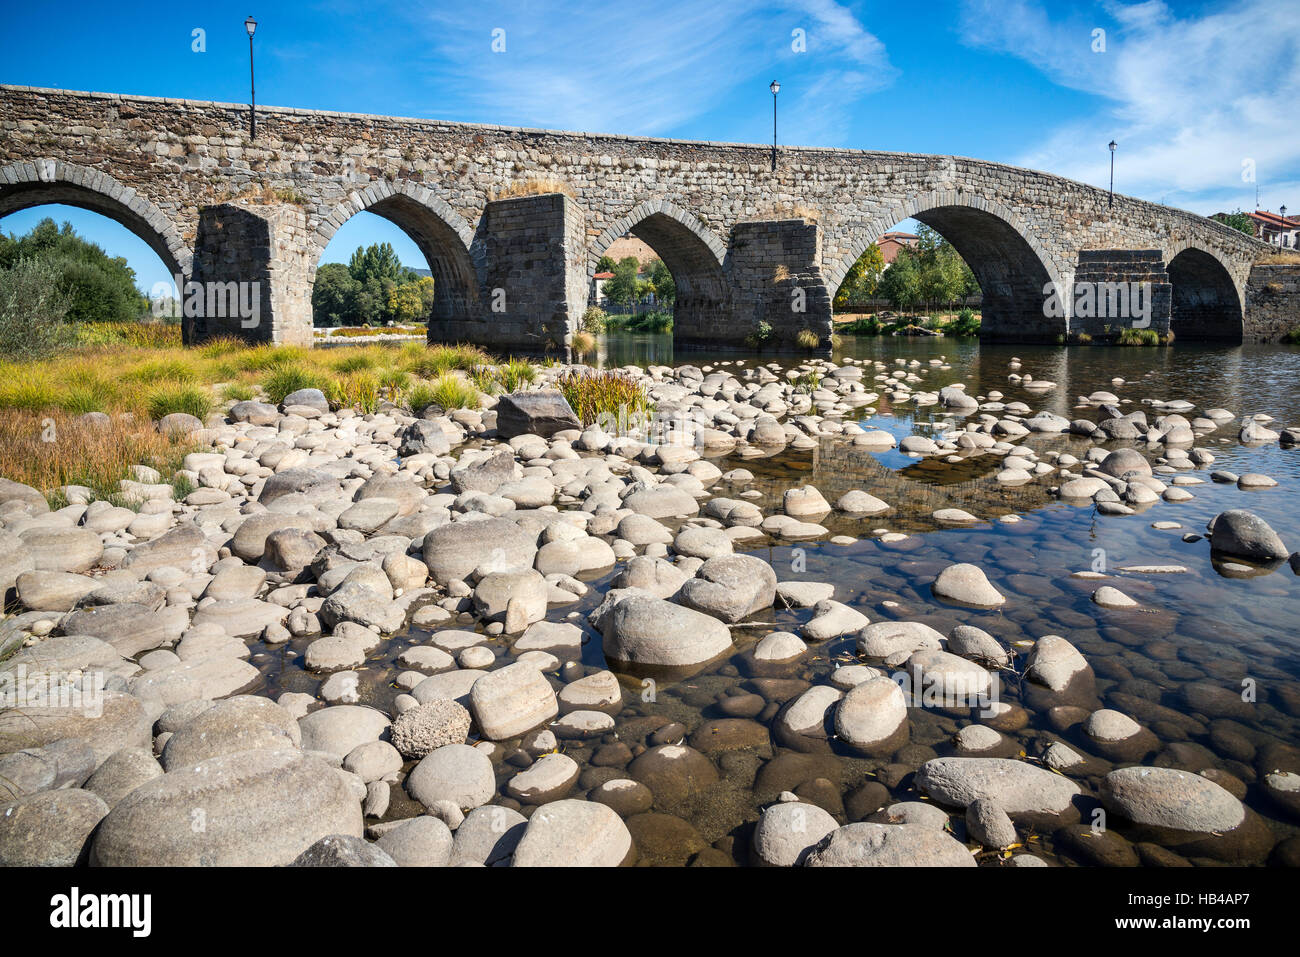 Il ponte romanico sul fiume Tormes a El Barco de avila, provincia di Avila, Spagna. Foto Stock